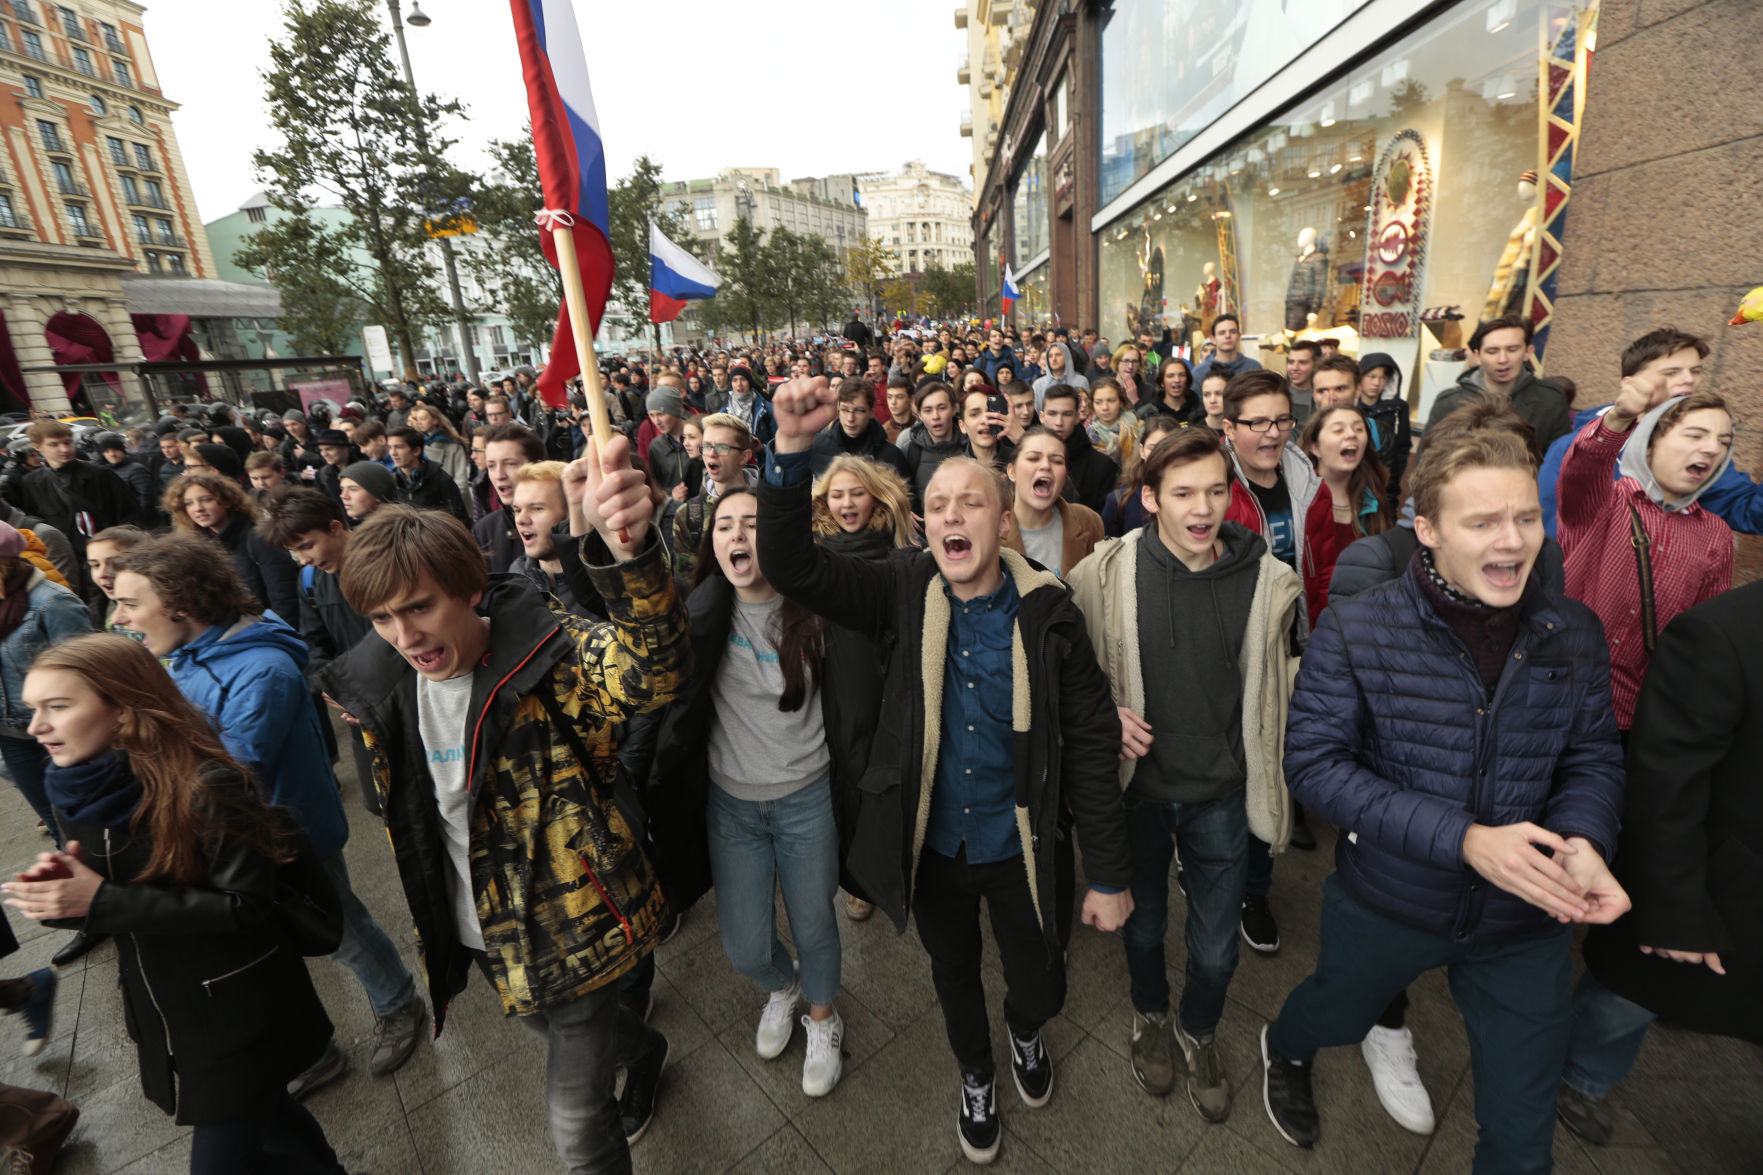 C митинг. Молодежь на митинге. Протесты молодежи. Митинг молодежи в Москве. Молодежь акции протеста.